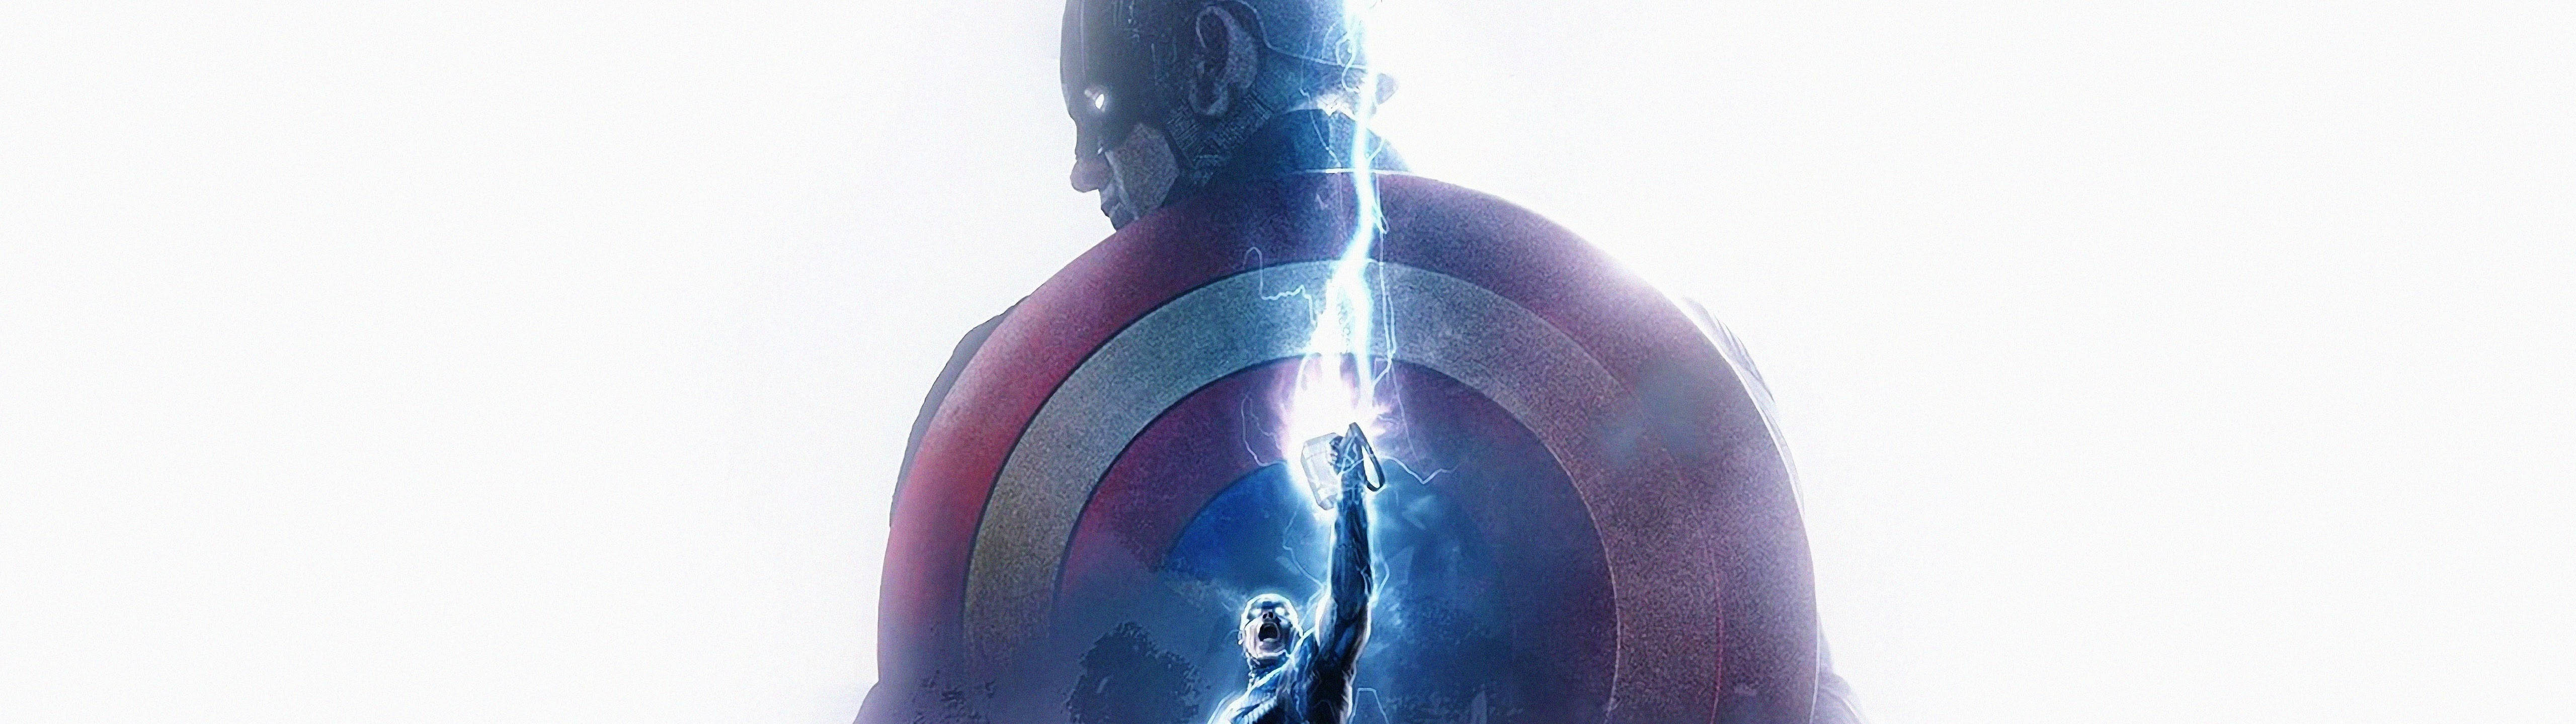 Marvel's Captain America With Mjolnir 5120 X 1440 Wallpaper